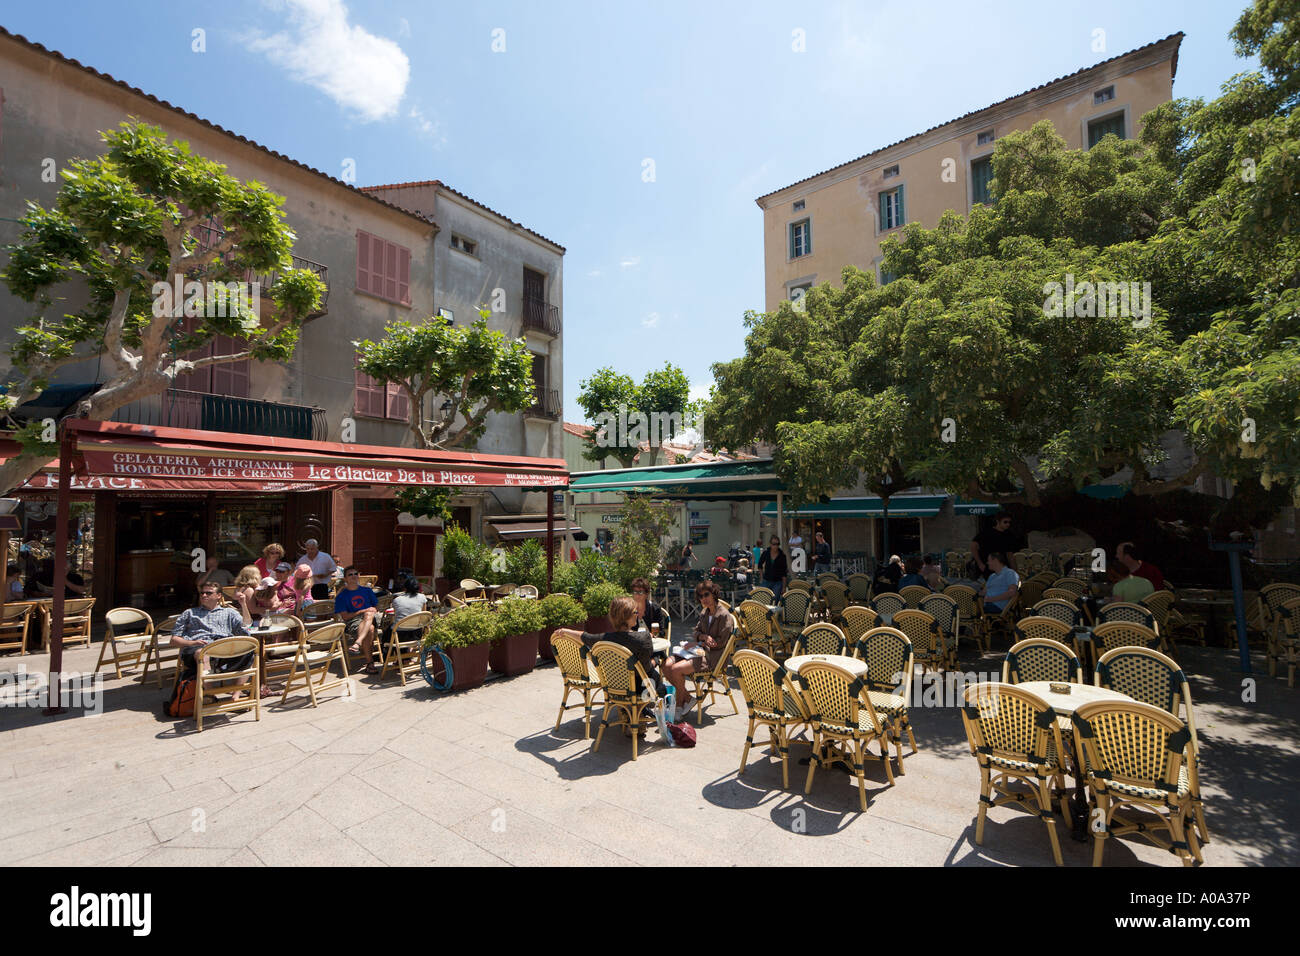 Street cafe in the Place de la Republique (the main square) in the Old Town, Porto Vecchio, Corsica, France Stock Photo